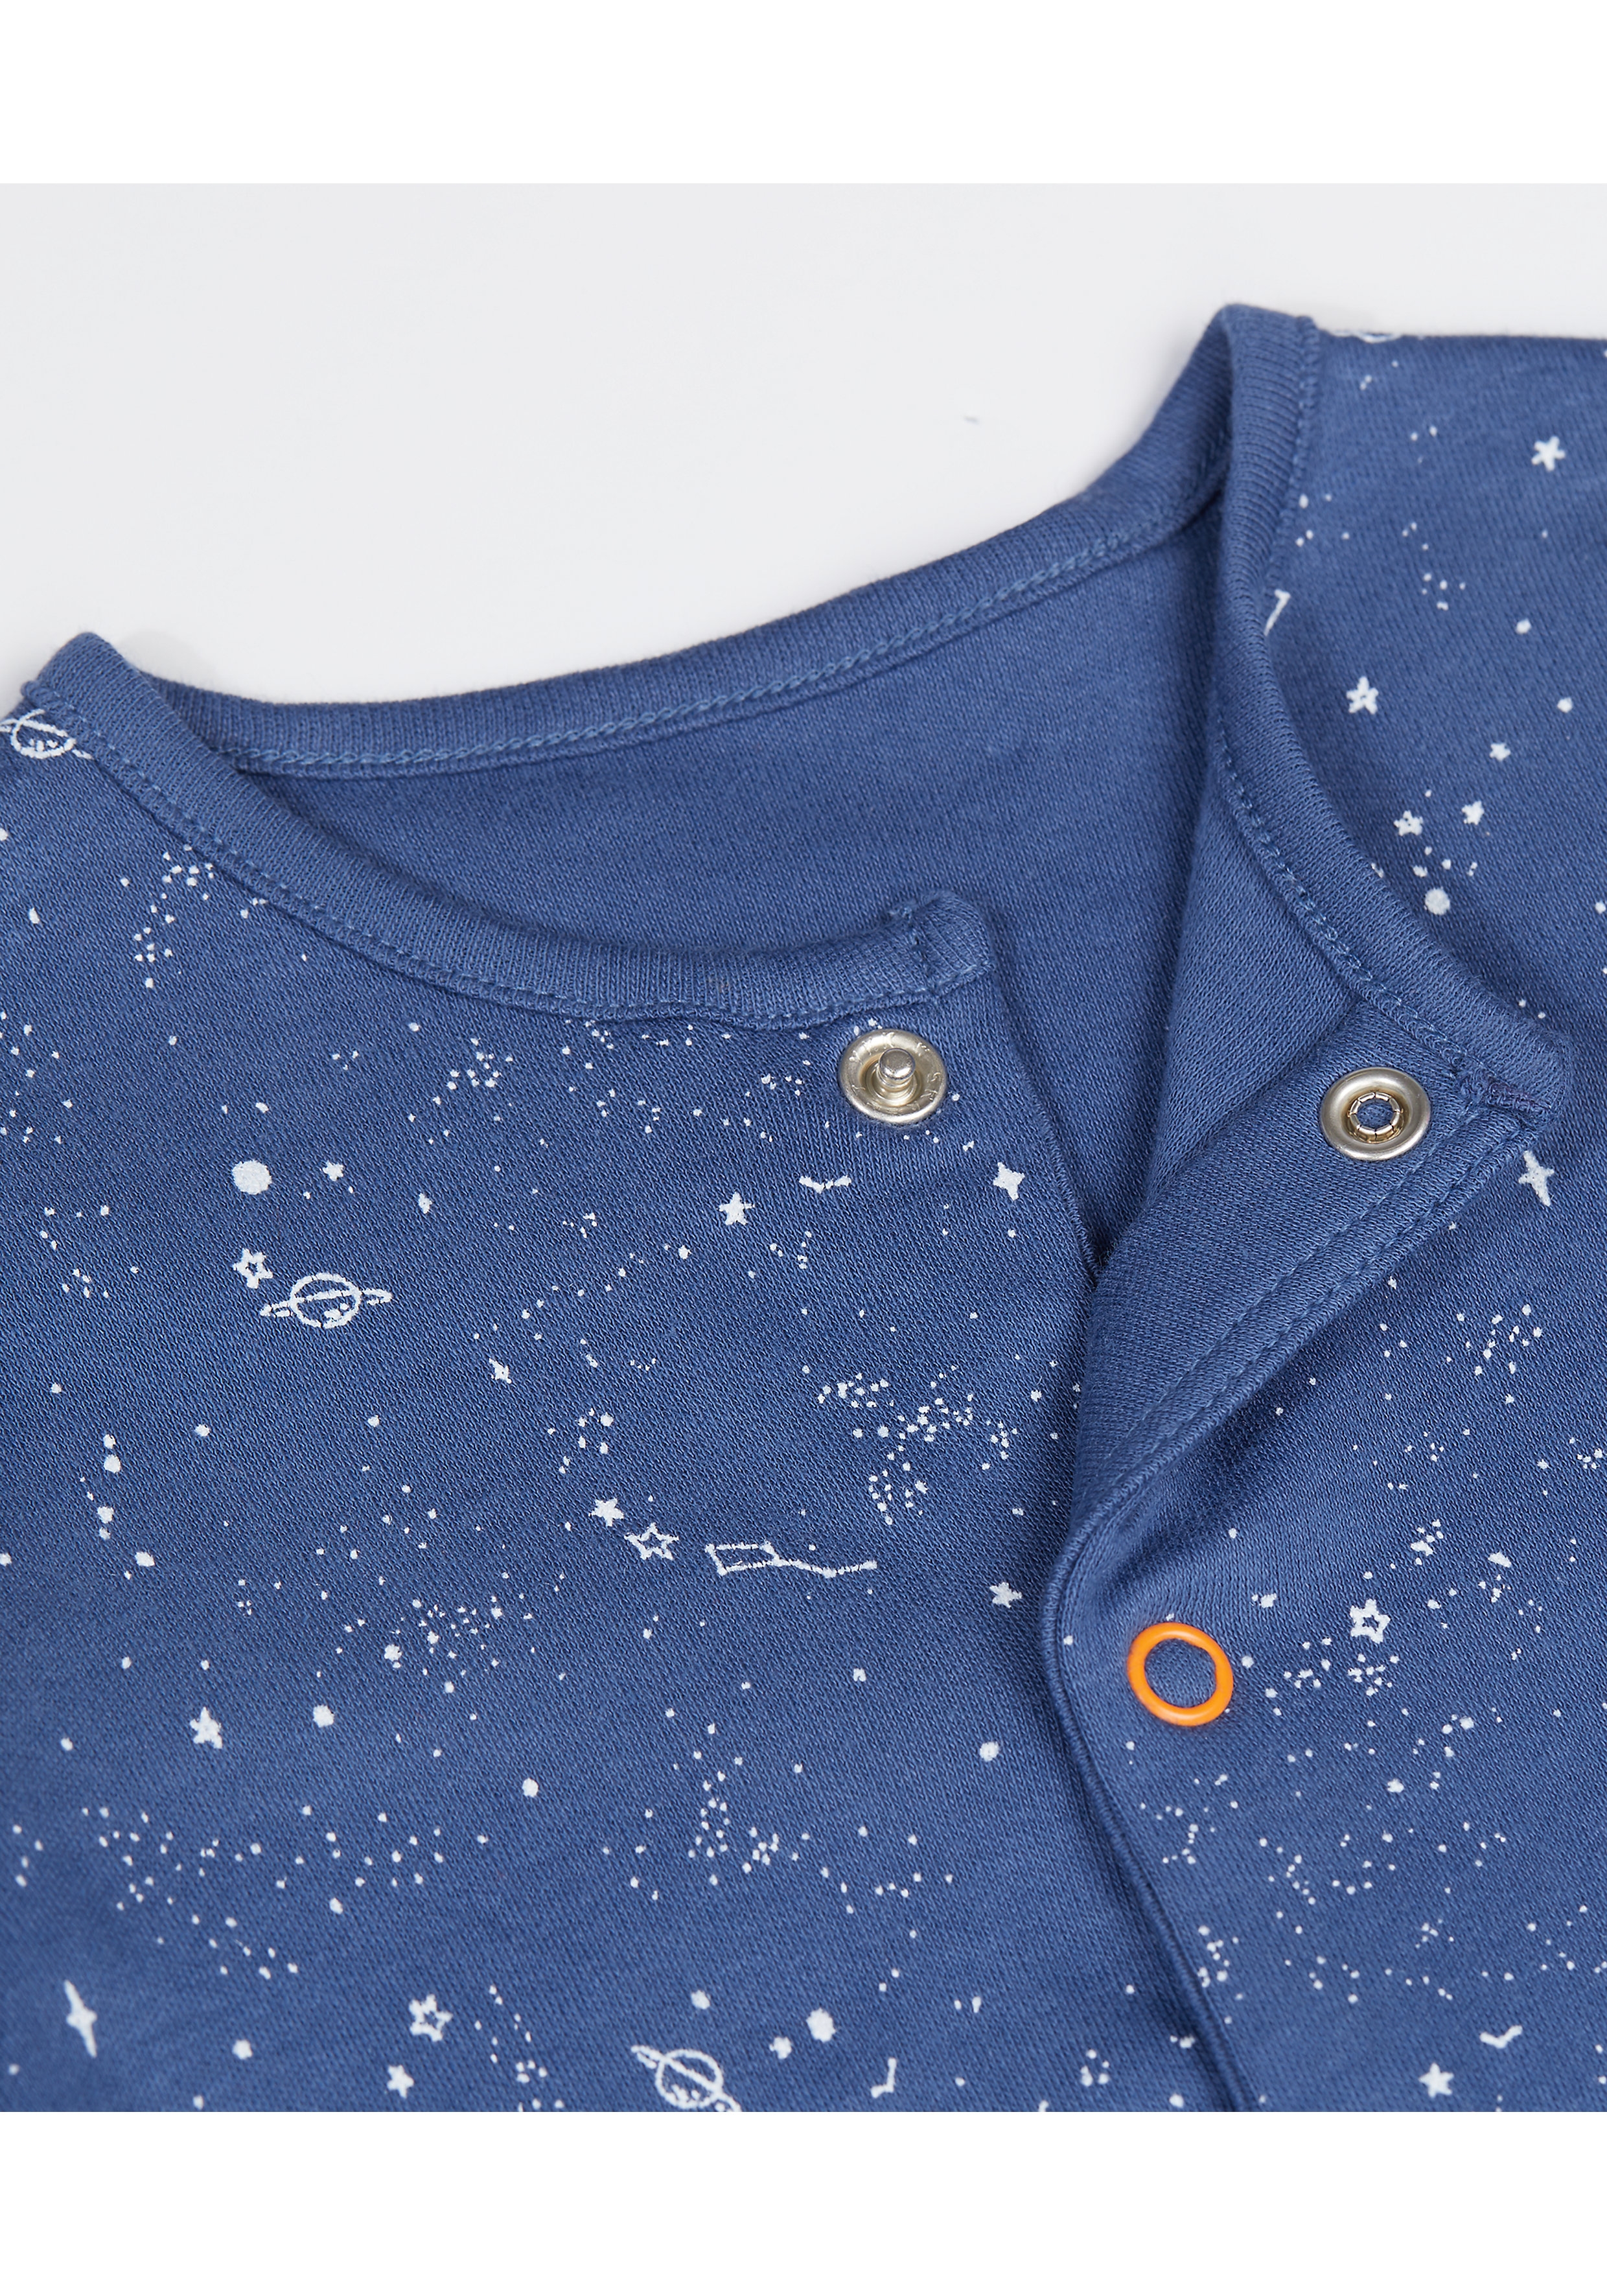 Mothercare | Boys Sleepsuit Space Print - Pack Of 3 - Orange Navy Grey 2